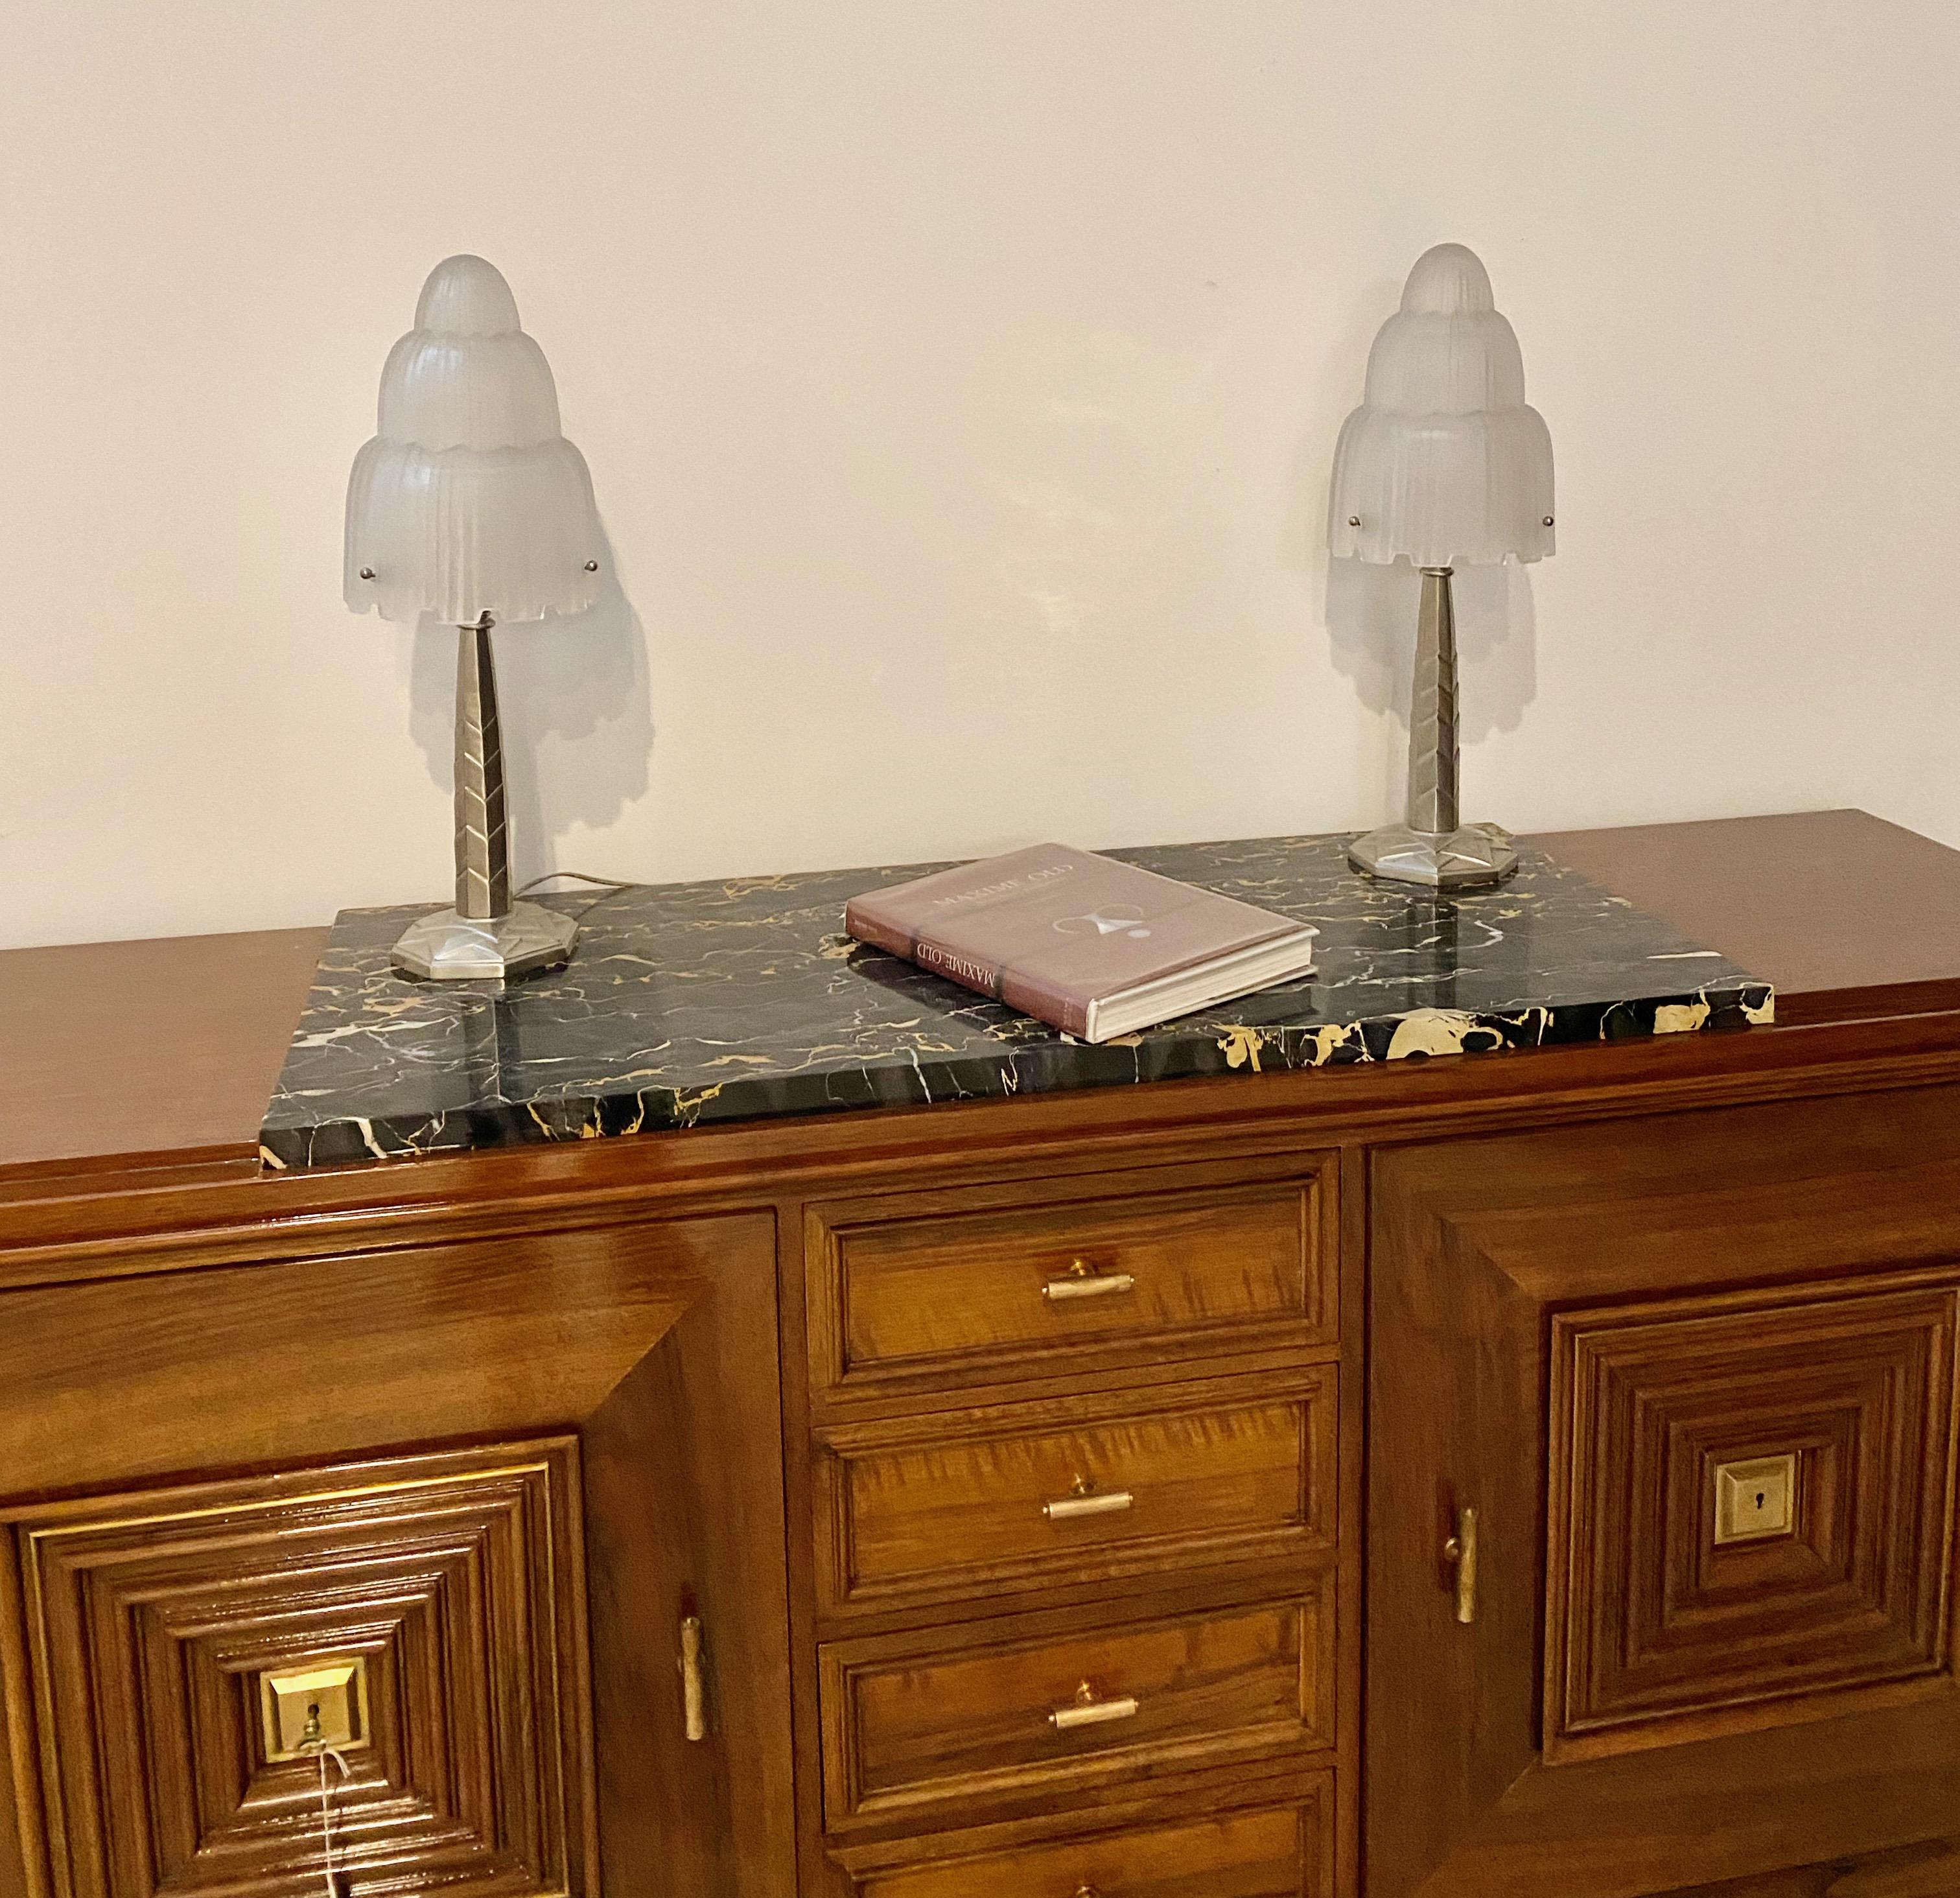 Magnifique paire de lampes de table Art Déco françaises créées par Marius Ernest Sabino, (1878-1961). Les abat-jour sont en verre dépoli transparent avec des détails polis appelés 